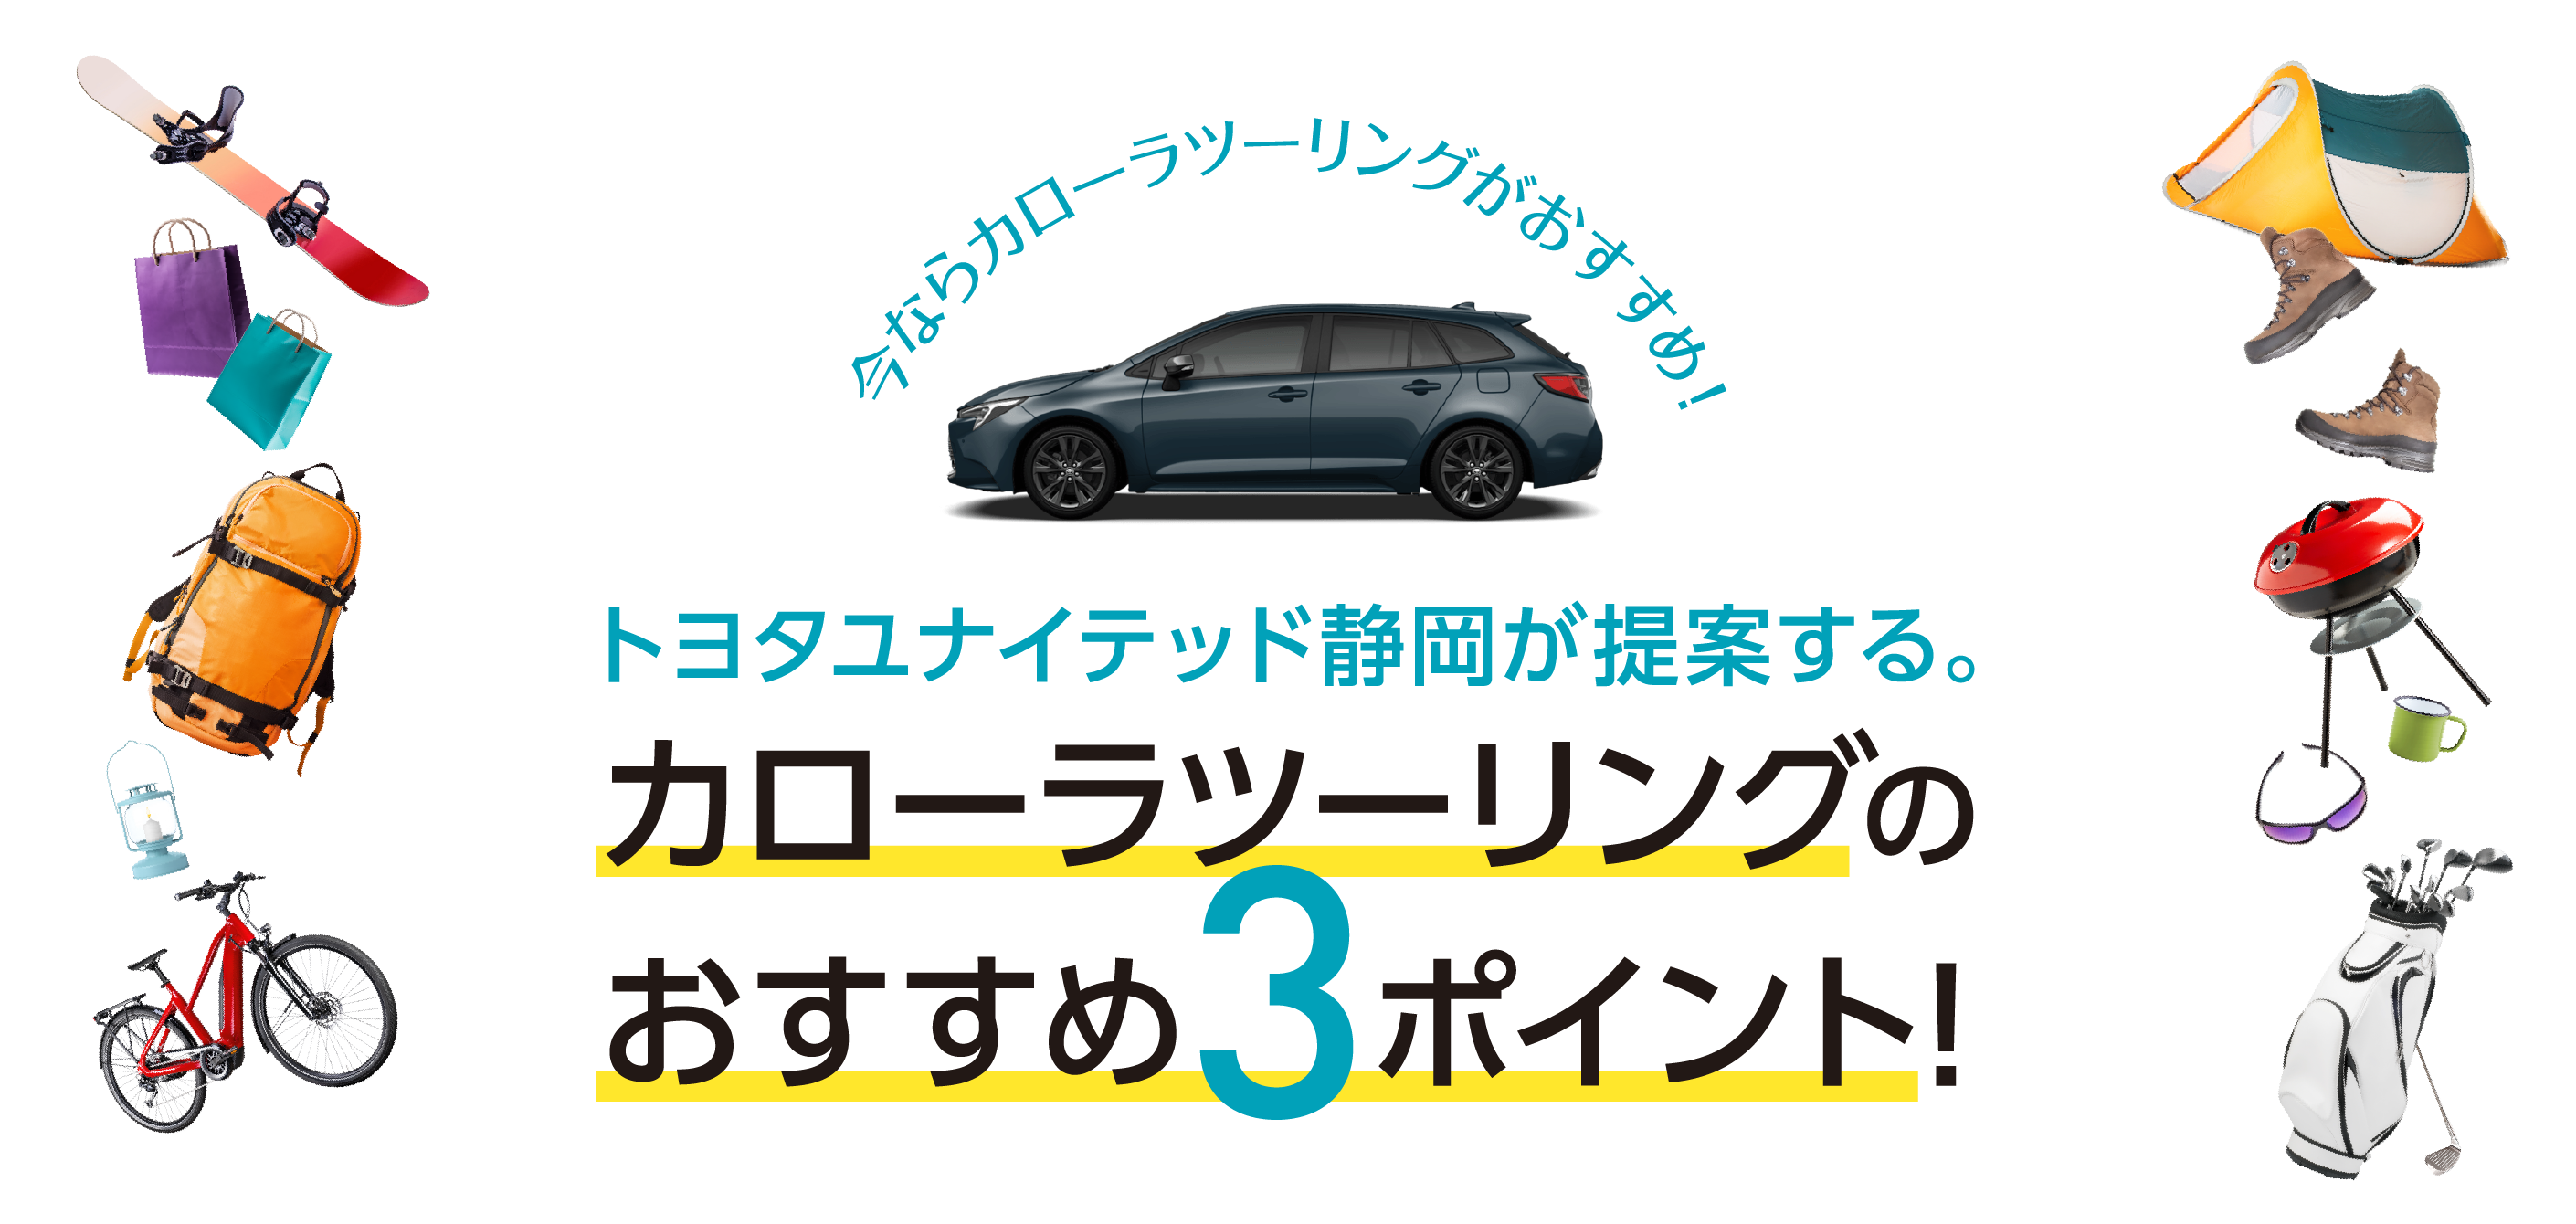 トヨタユナイテッド静岡が提案するカローラツーリングのおすすめ3つのポイント